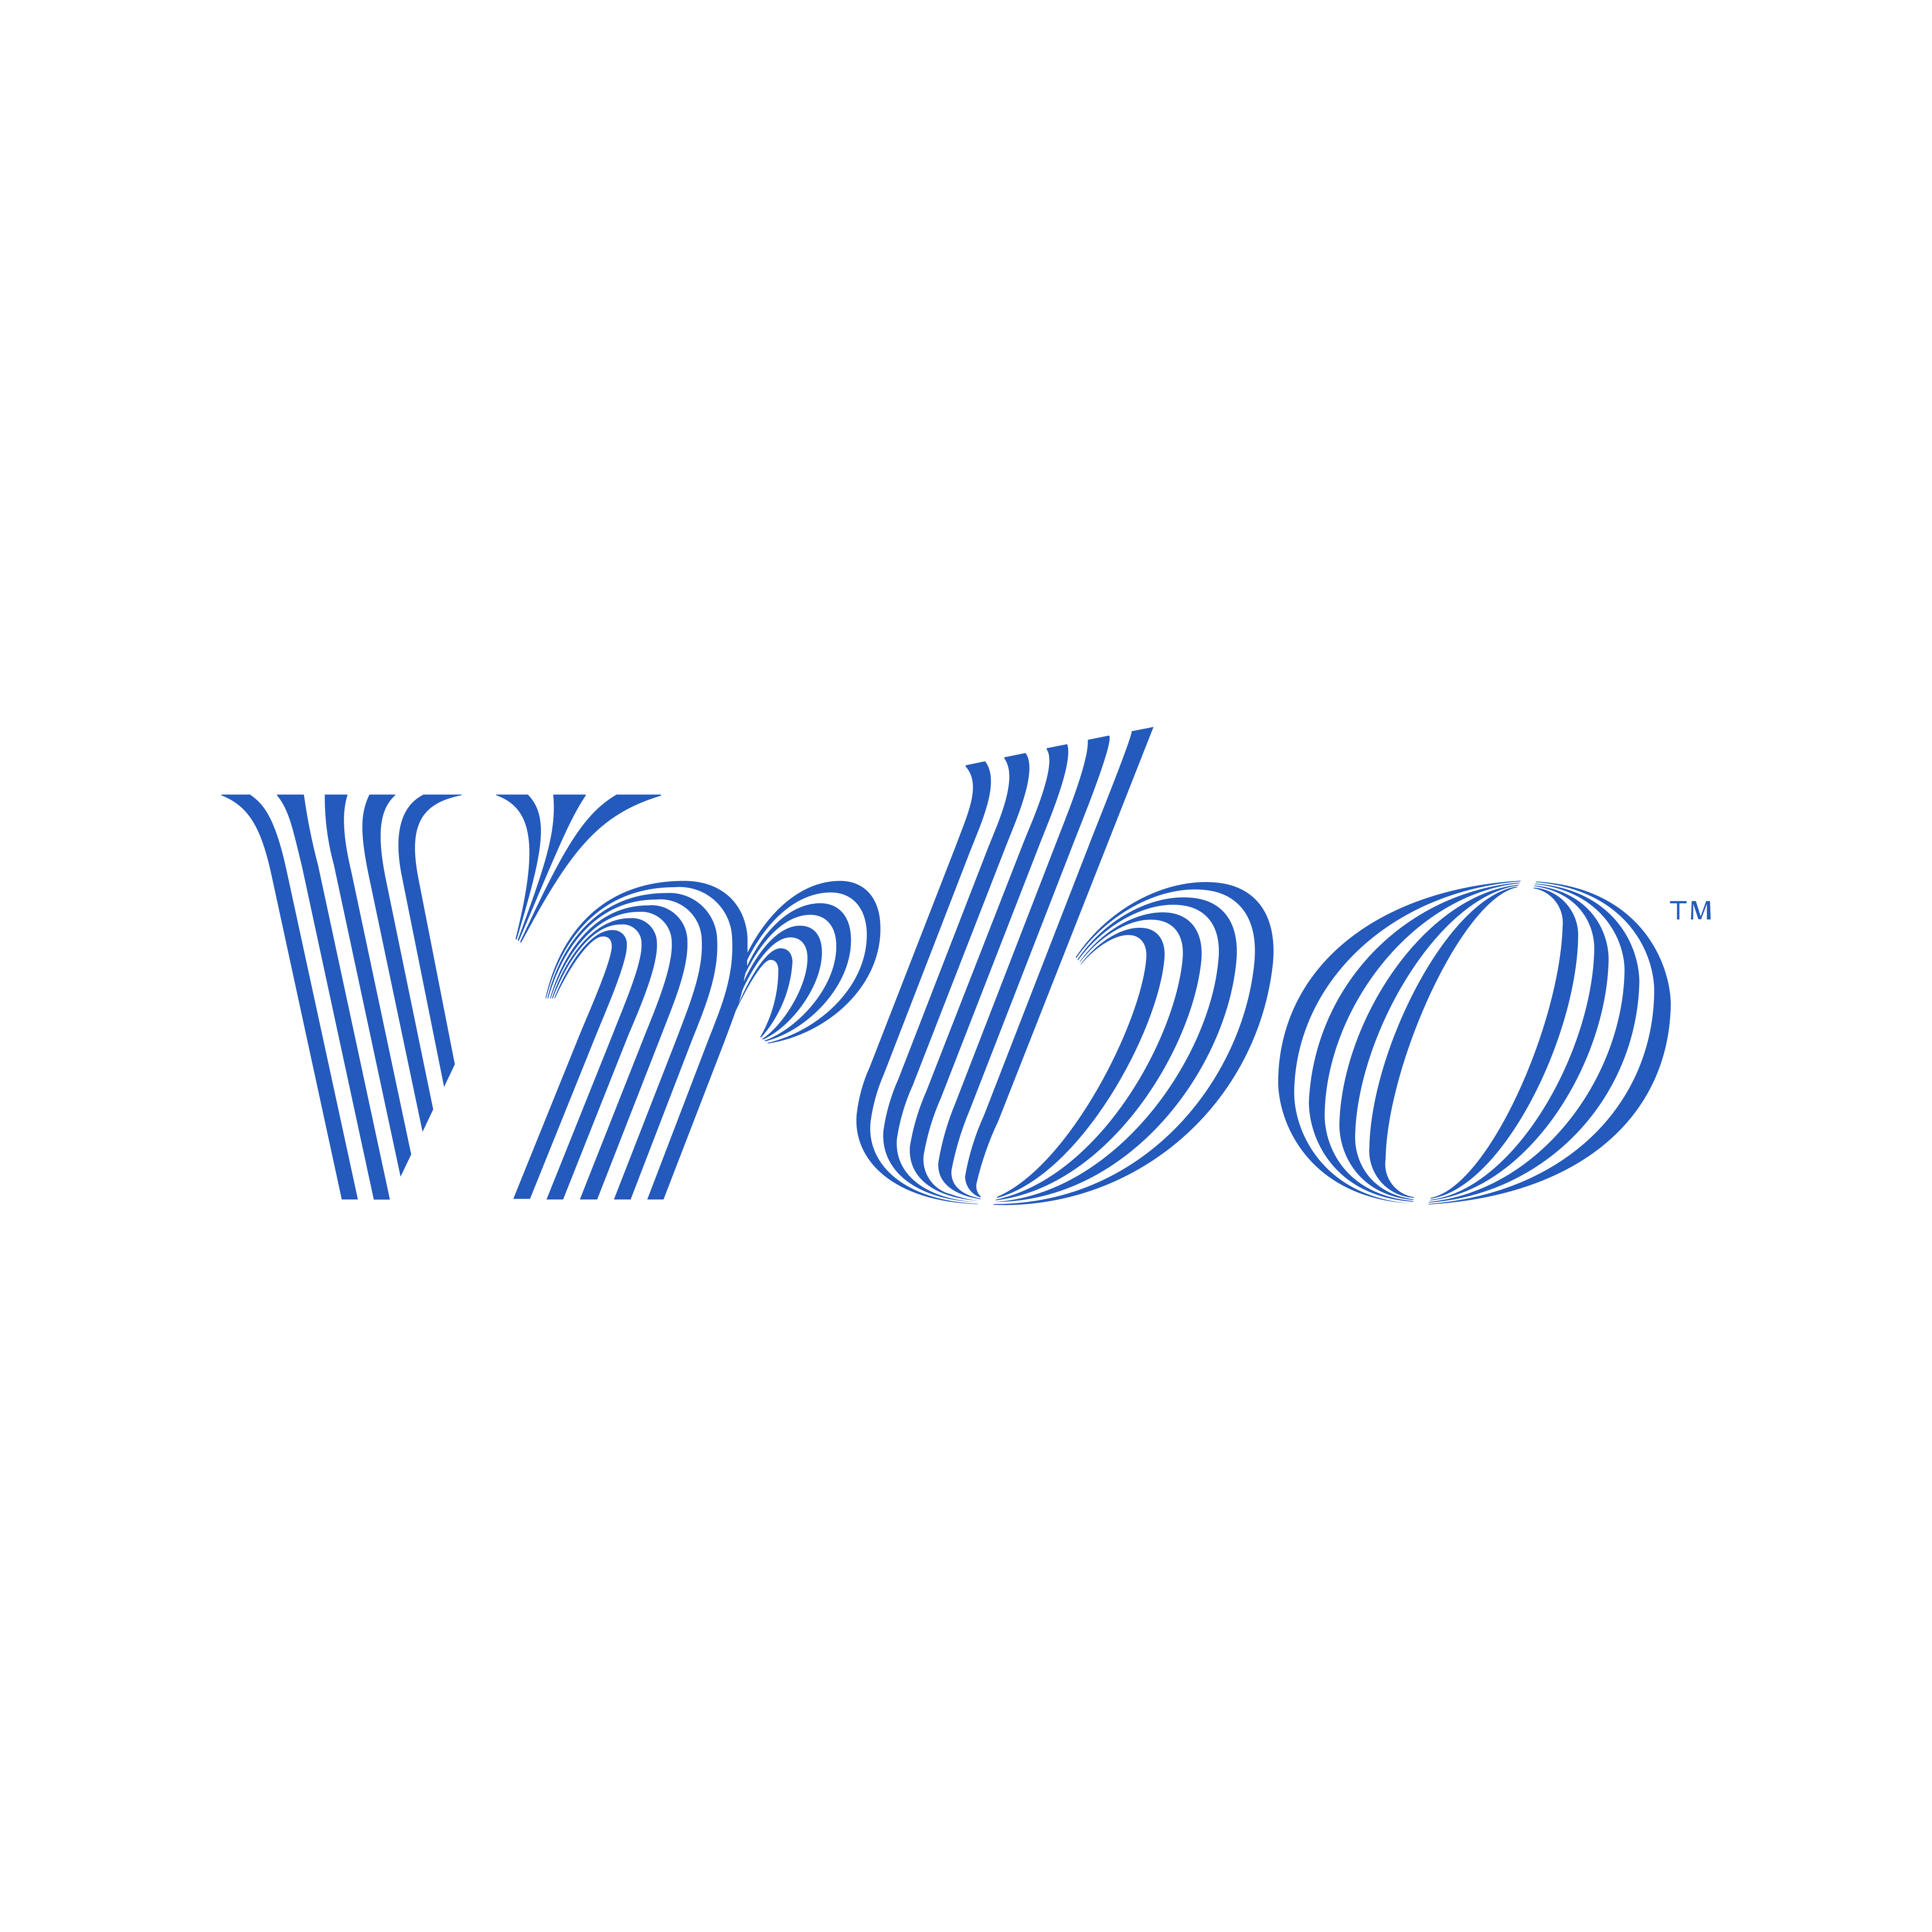 vrbo logo 0 - VRBO Logo